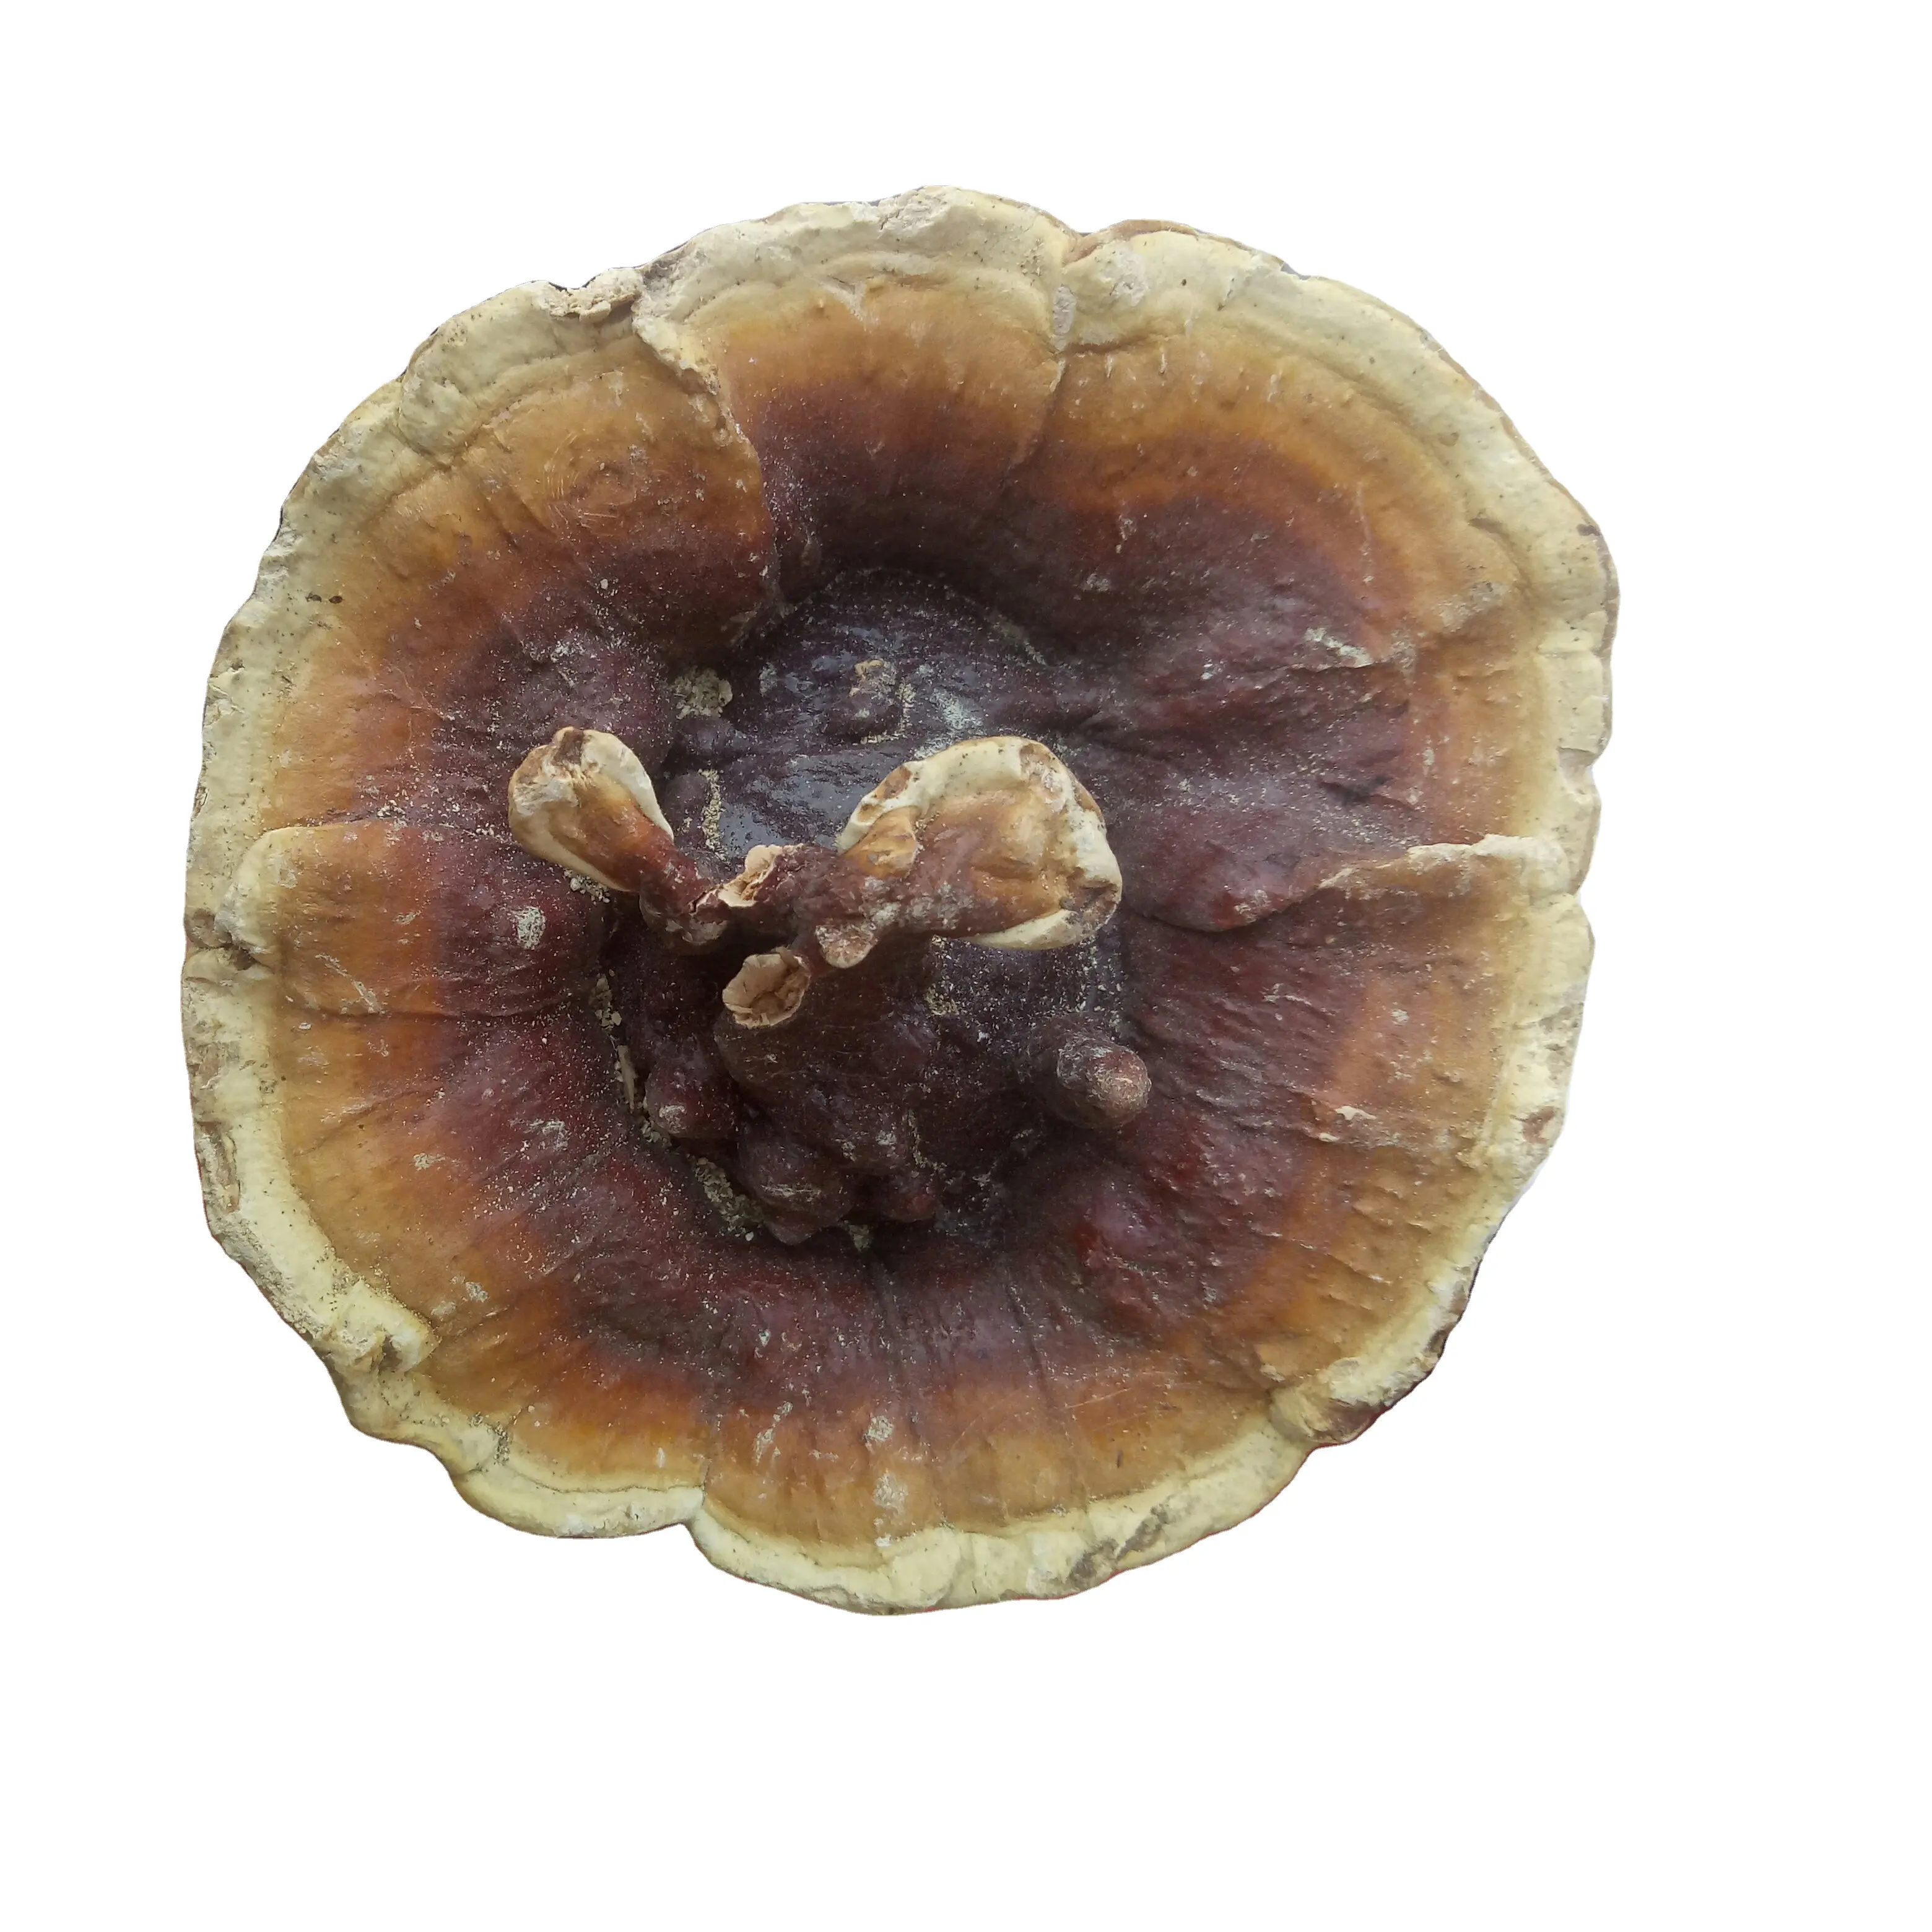 Wild new collect reishi mushroom Ganoderma lucidum Leyss ex Fr Karst